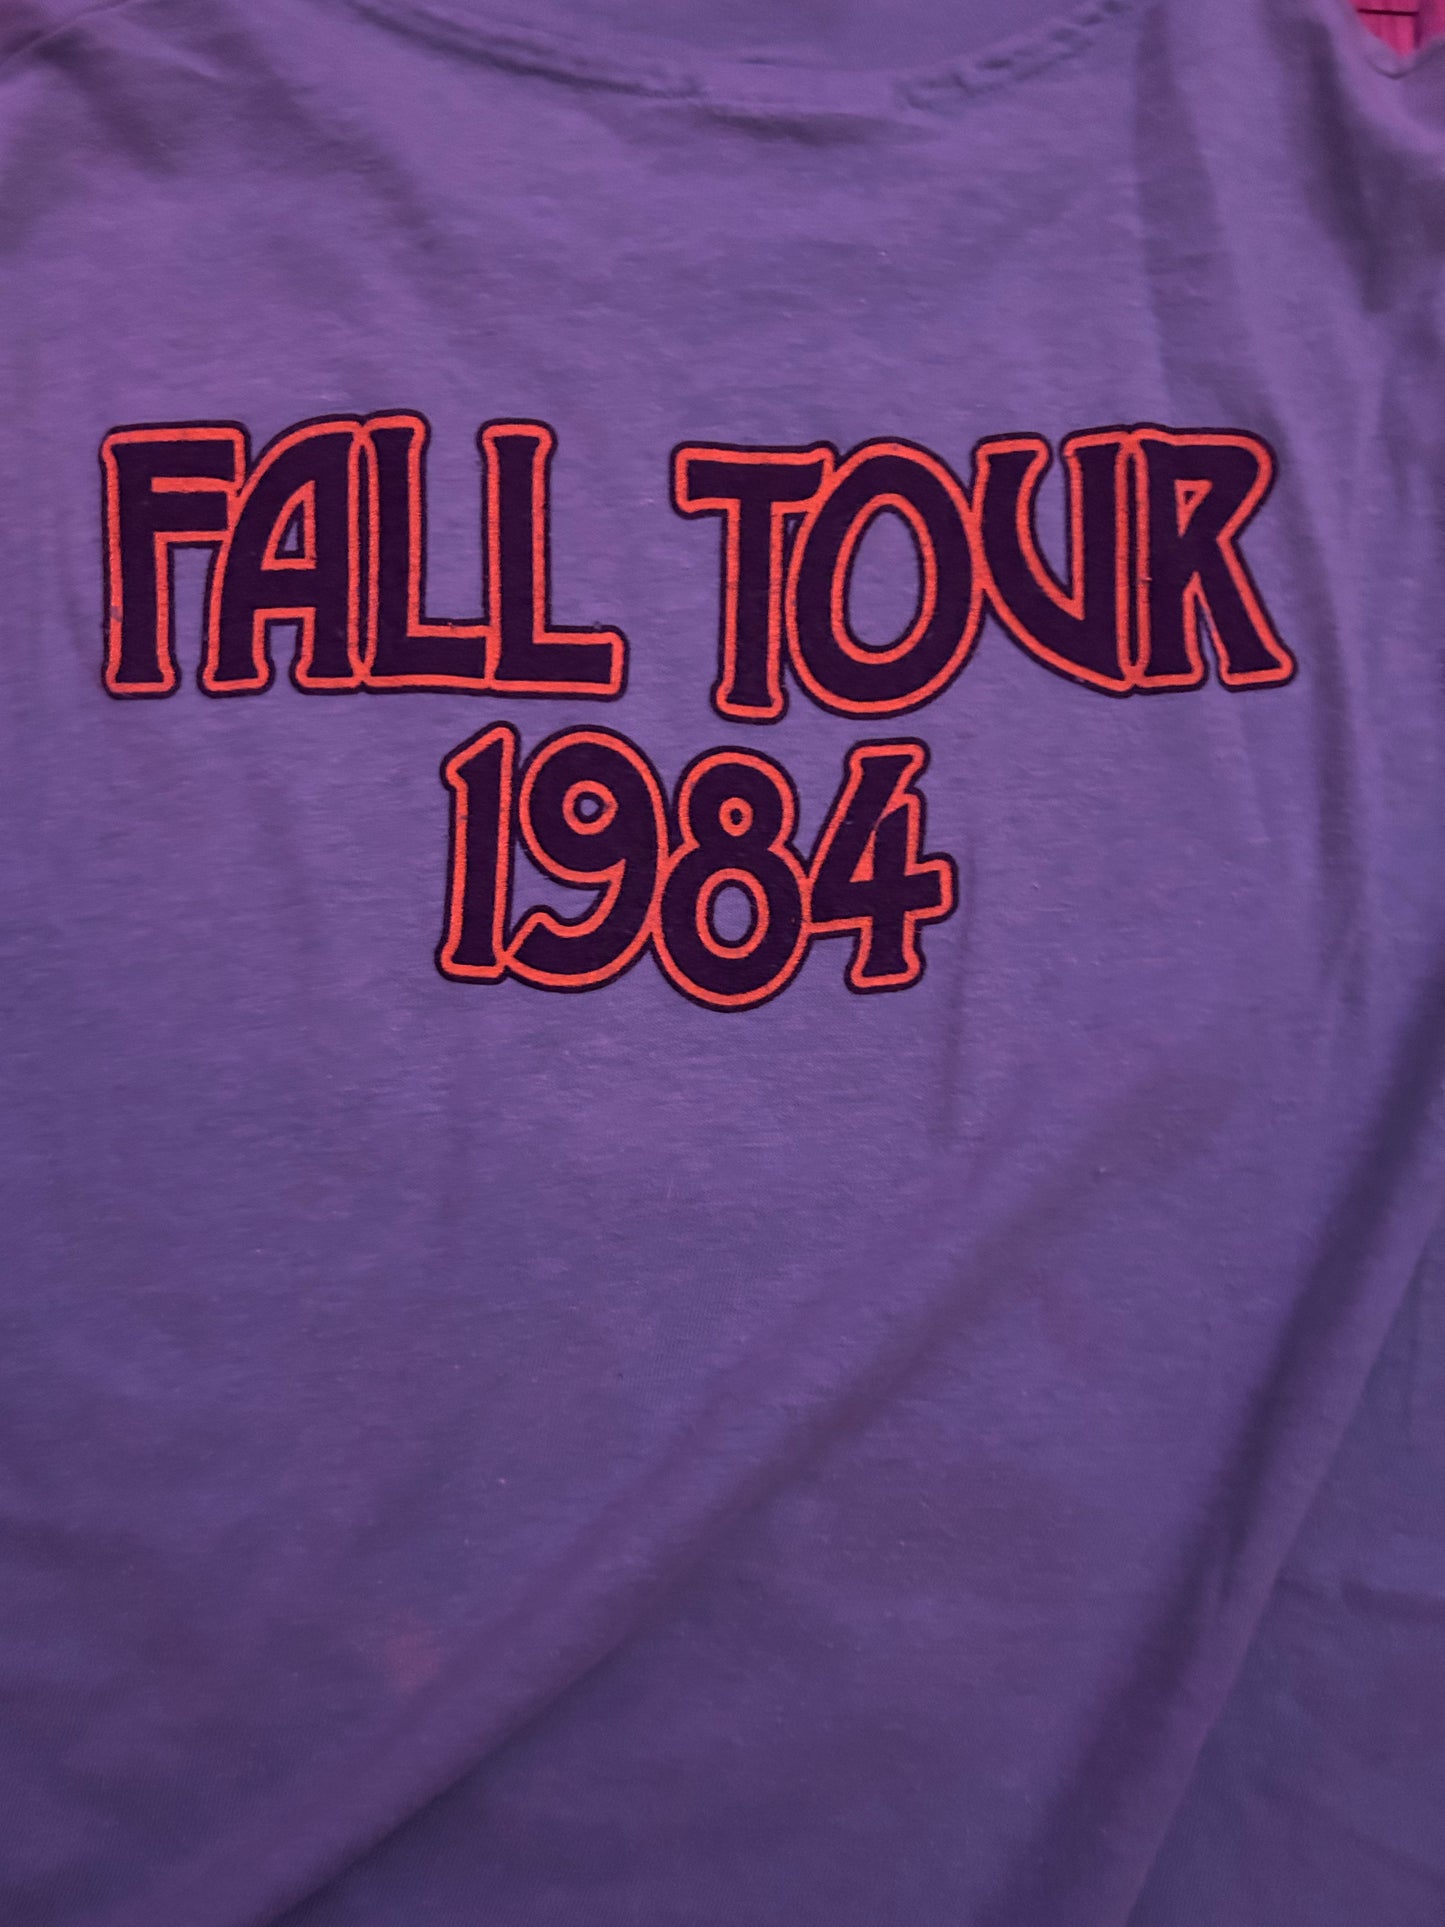 1984 Grateful Dead Fall Tour T Size-XL